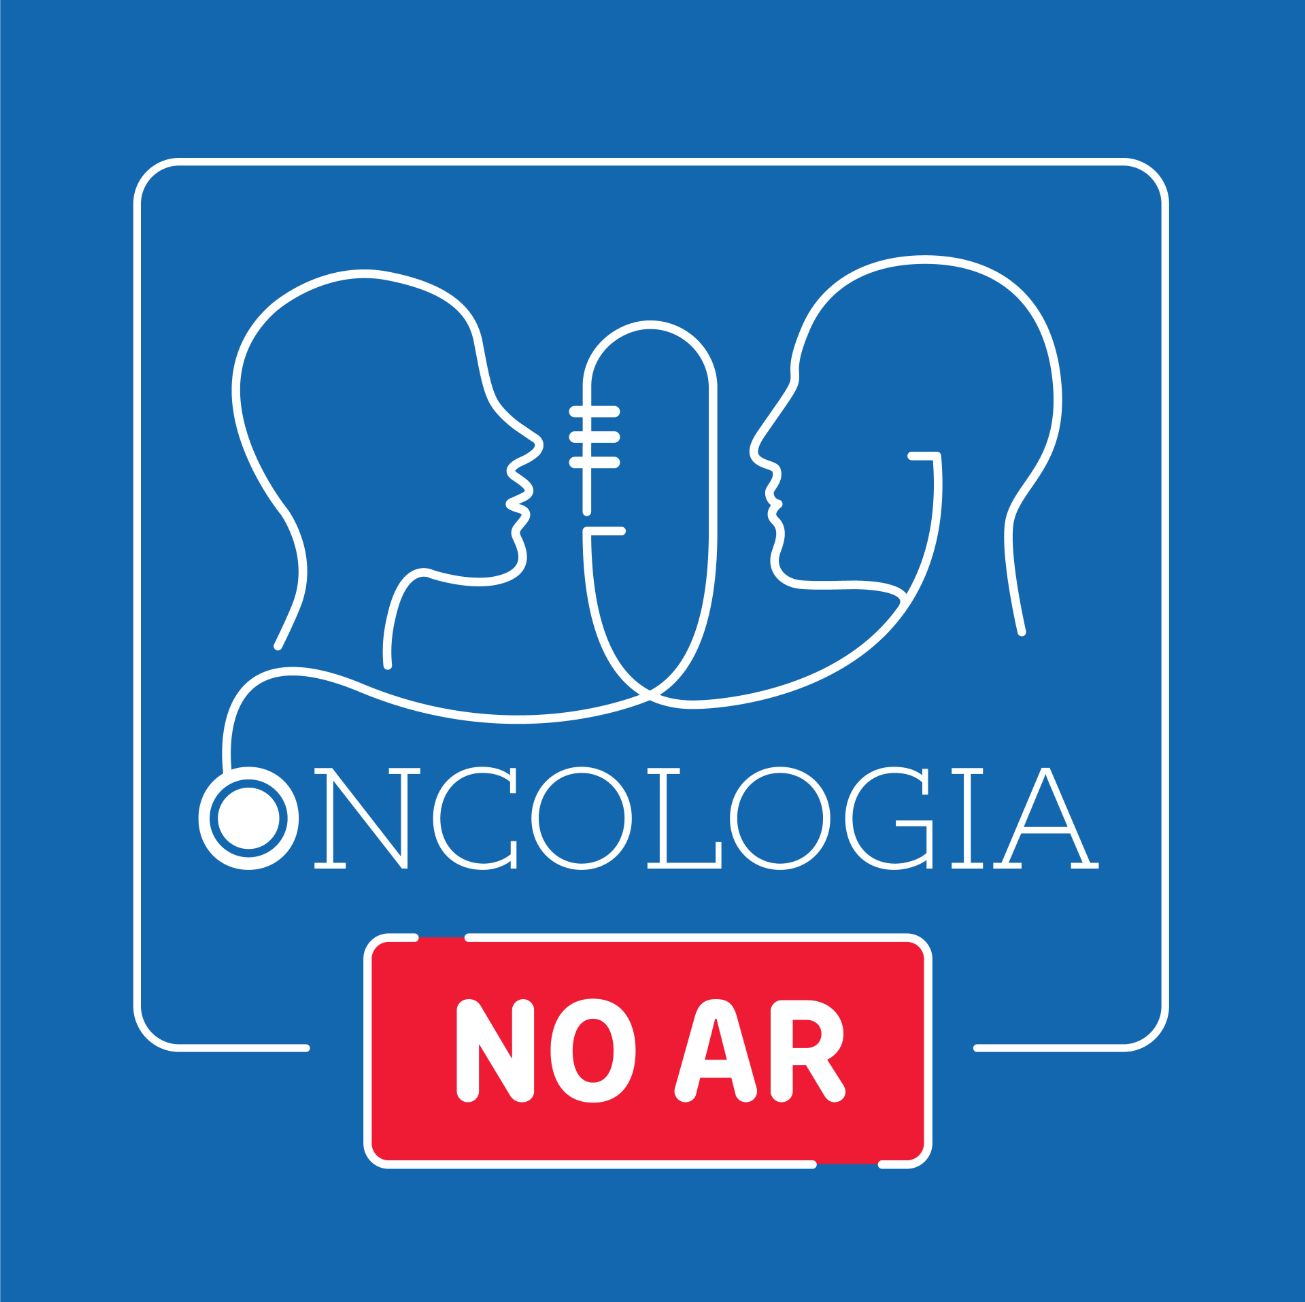 Podcast "Oncologia no Ar" pretende aumentar a literacia na área